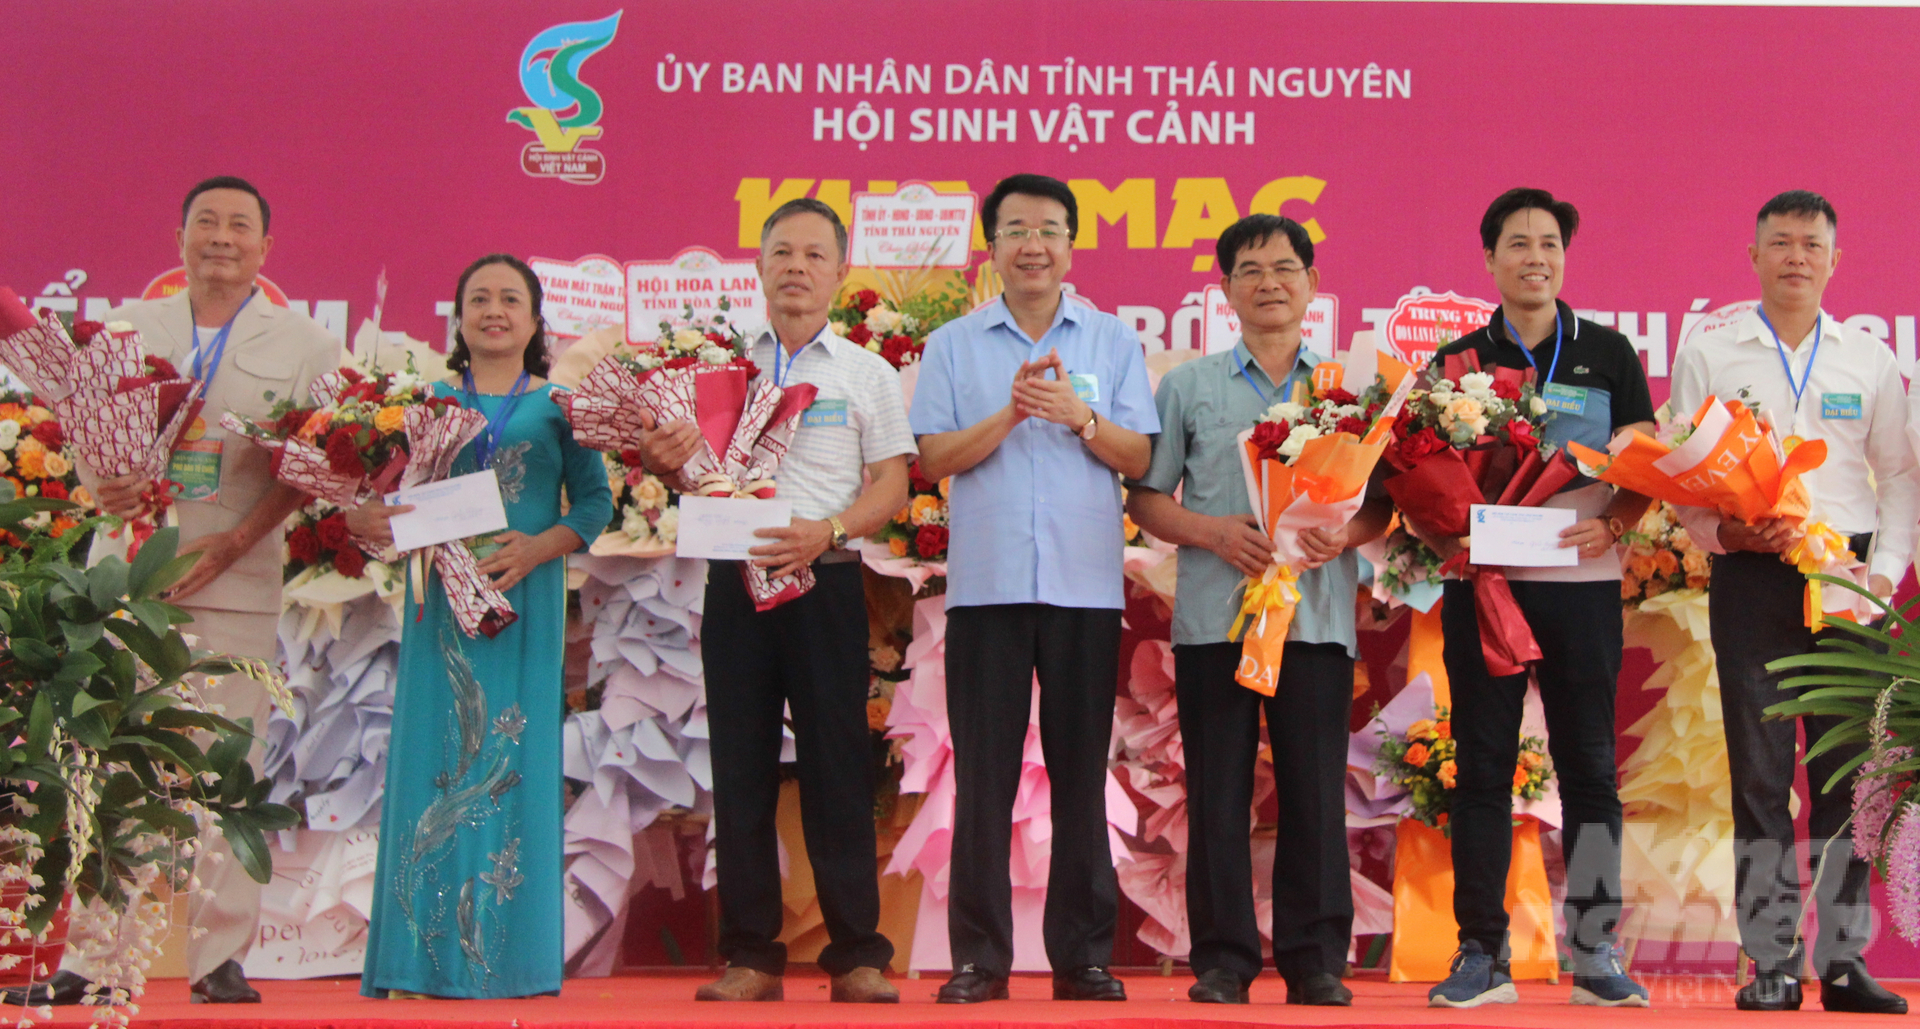 Mr. Nguyen Thanh Binh - รองประธานคณะกรรมการประชาชนจังหวัดท้ายเหงียน ในนามของคณะกรรมการจัดงาน มอบรางวัลสำหรับผลงานกล้วยไม้ยอดเยี่ยม  ภาพถ่าย: “Nguyen Hoan”